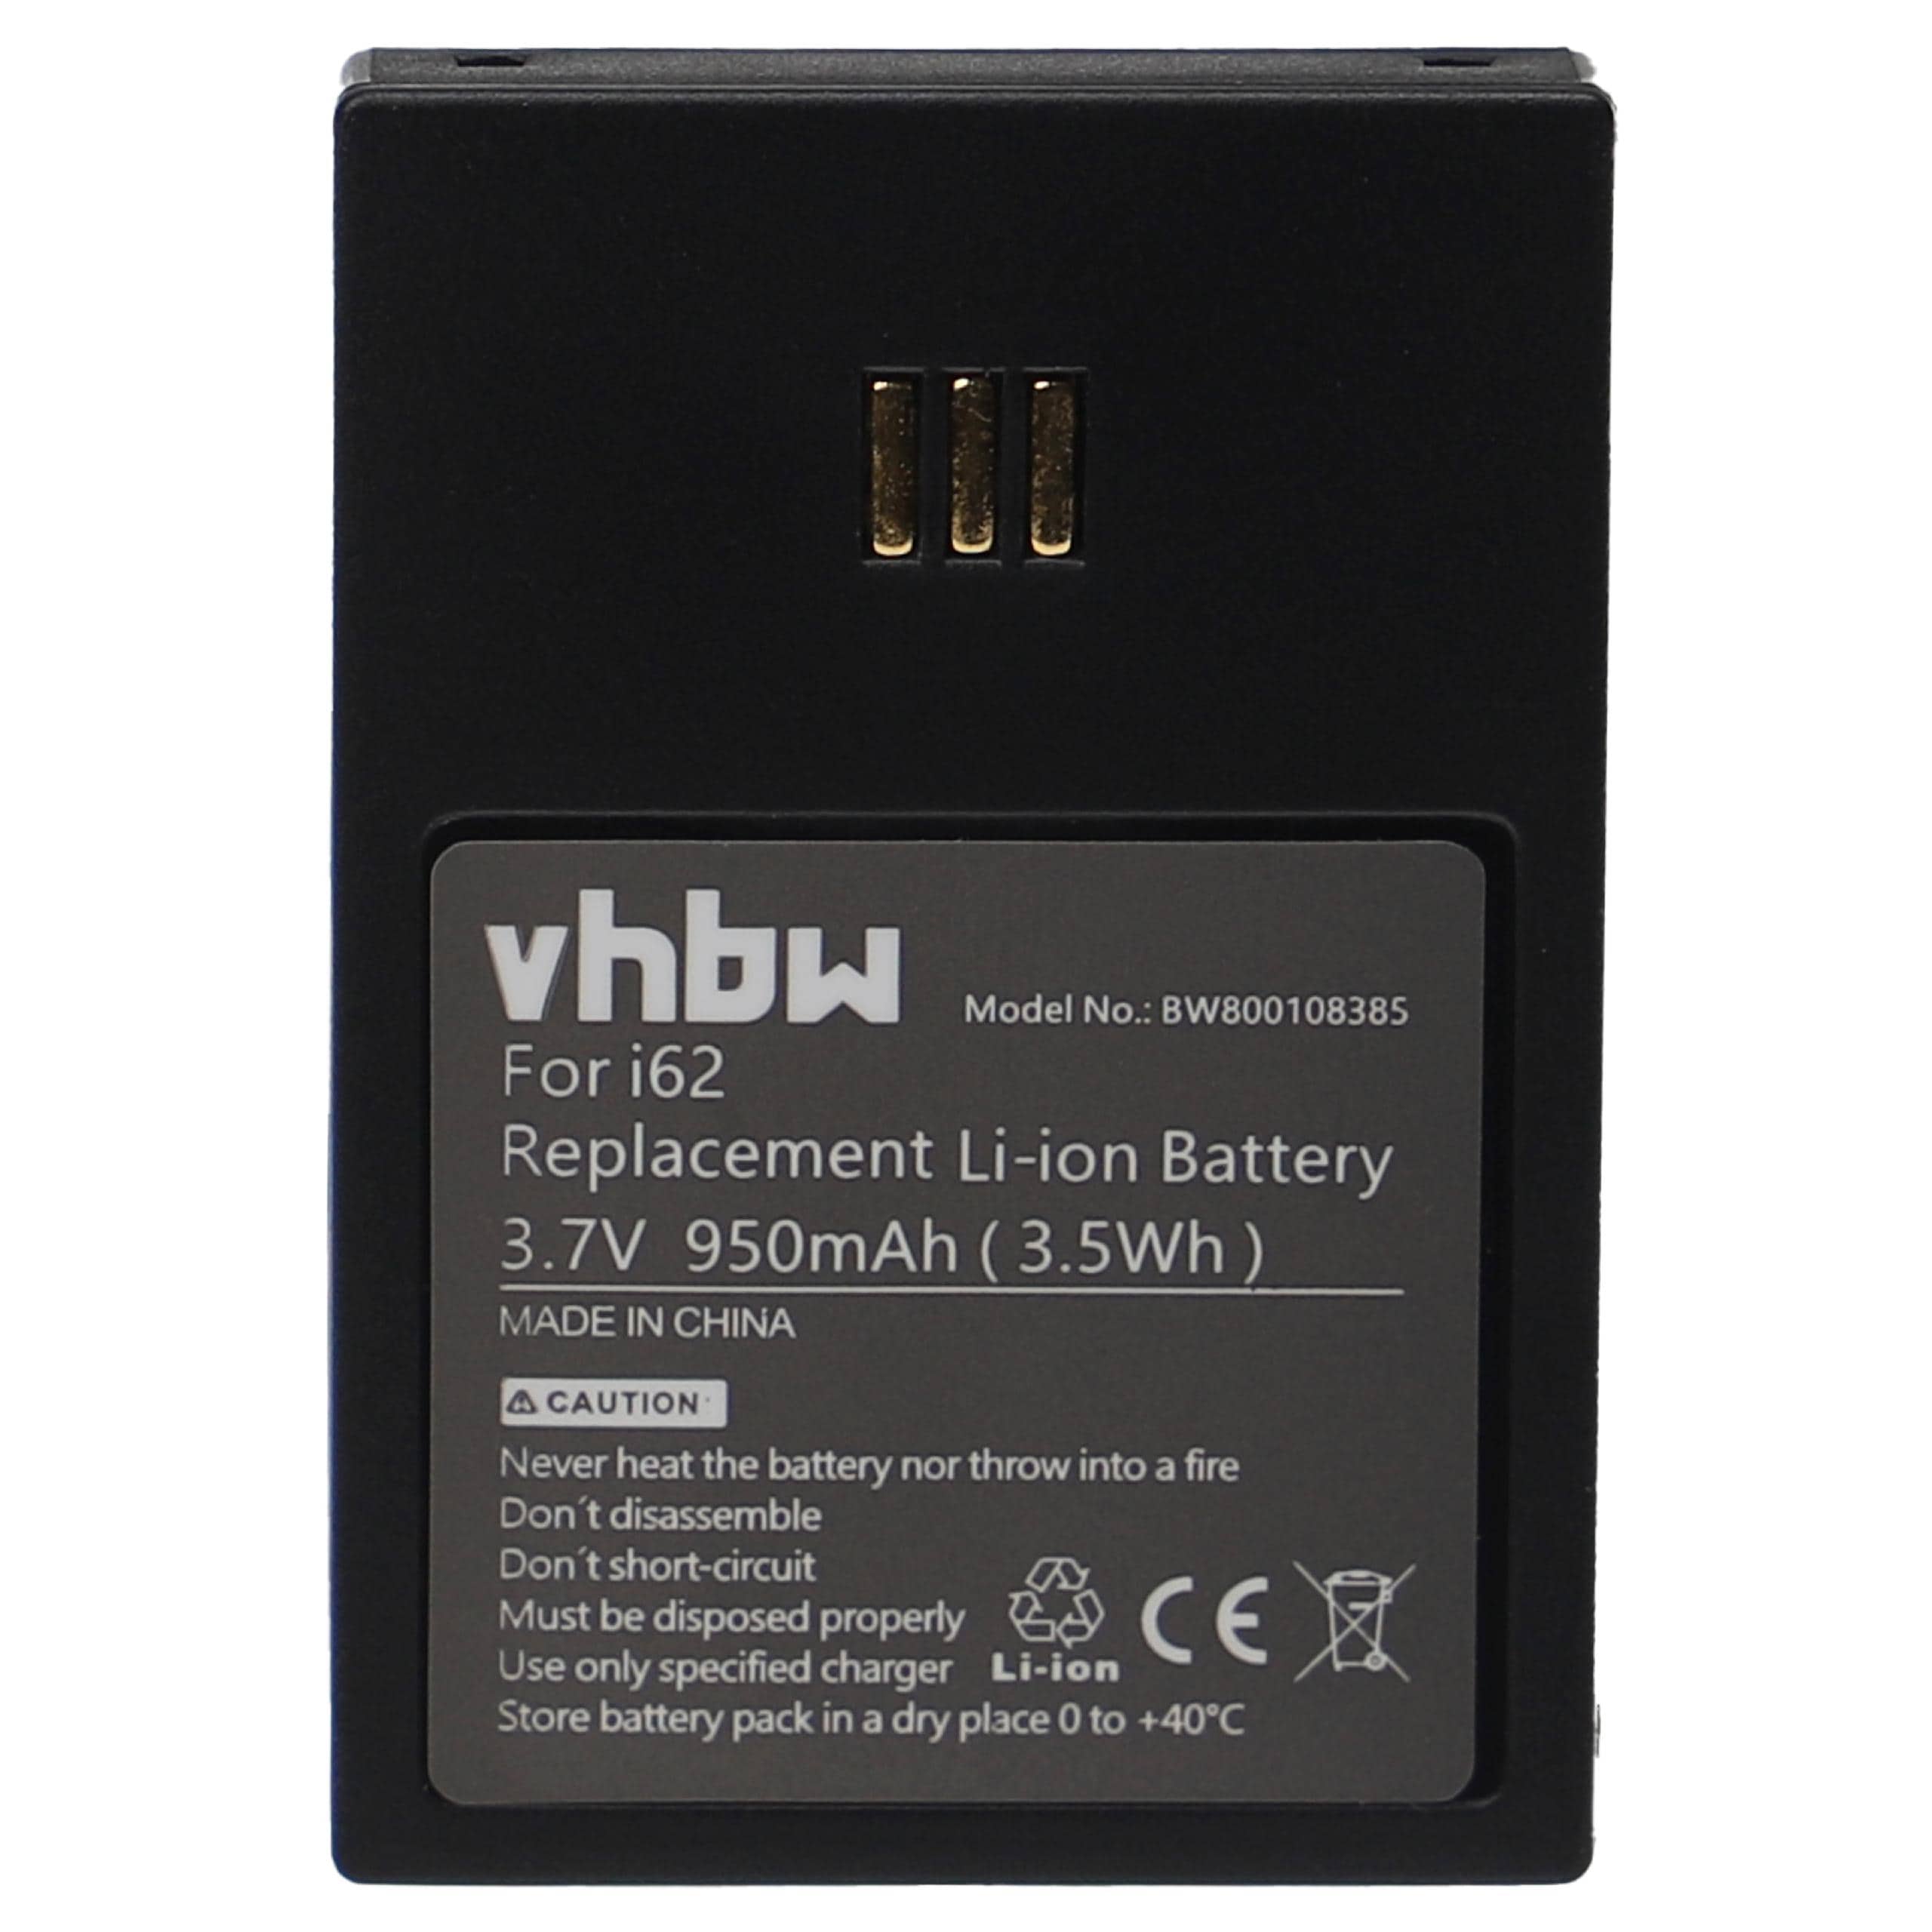 Batterie remplace Ascom RB-D62-L, 9D62, 660190/R2B pour téléphone - 950mAh 3,7V Li-ion